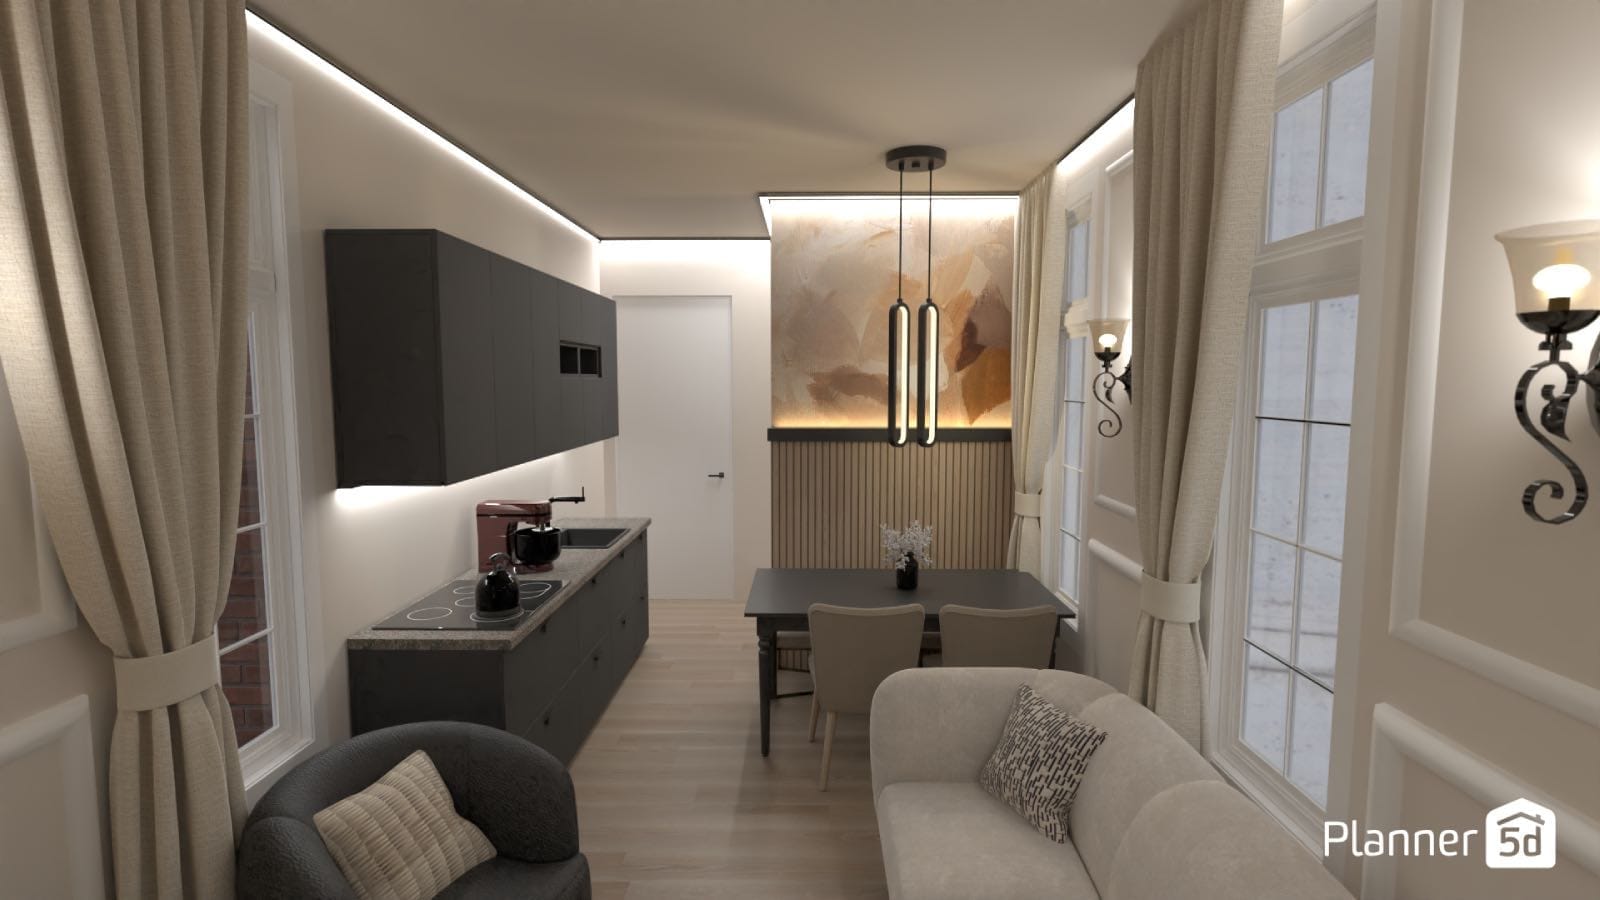 interior design software, 3d render of kitchen